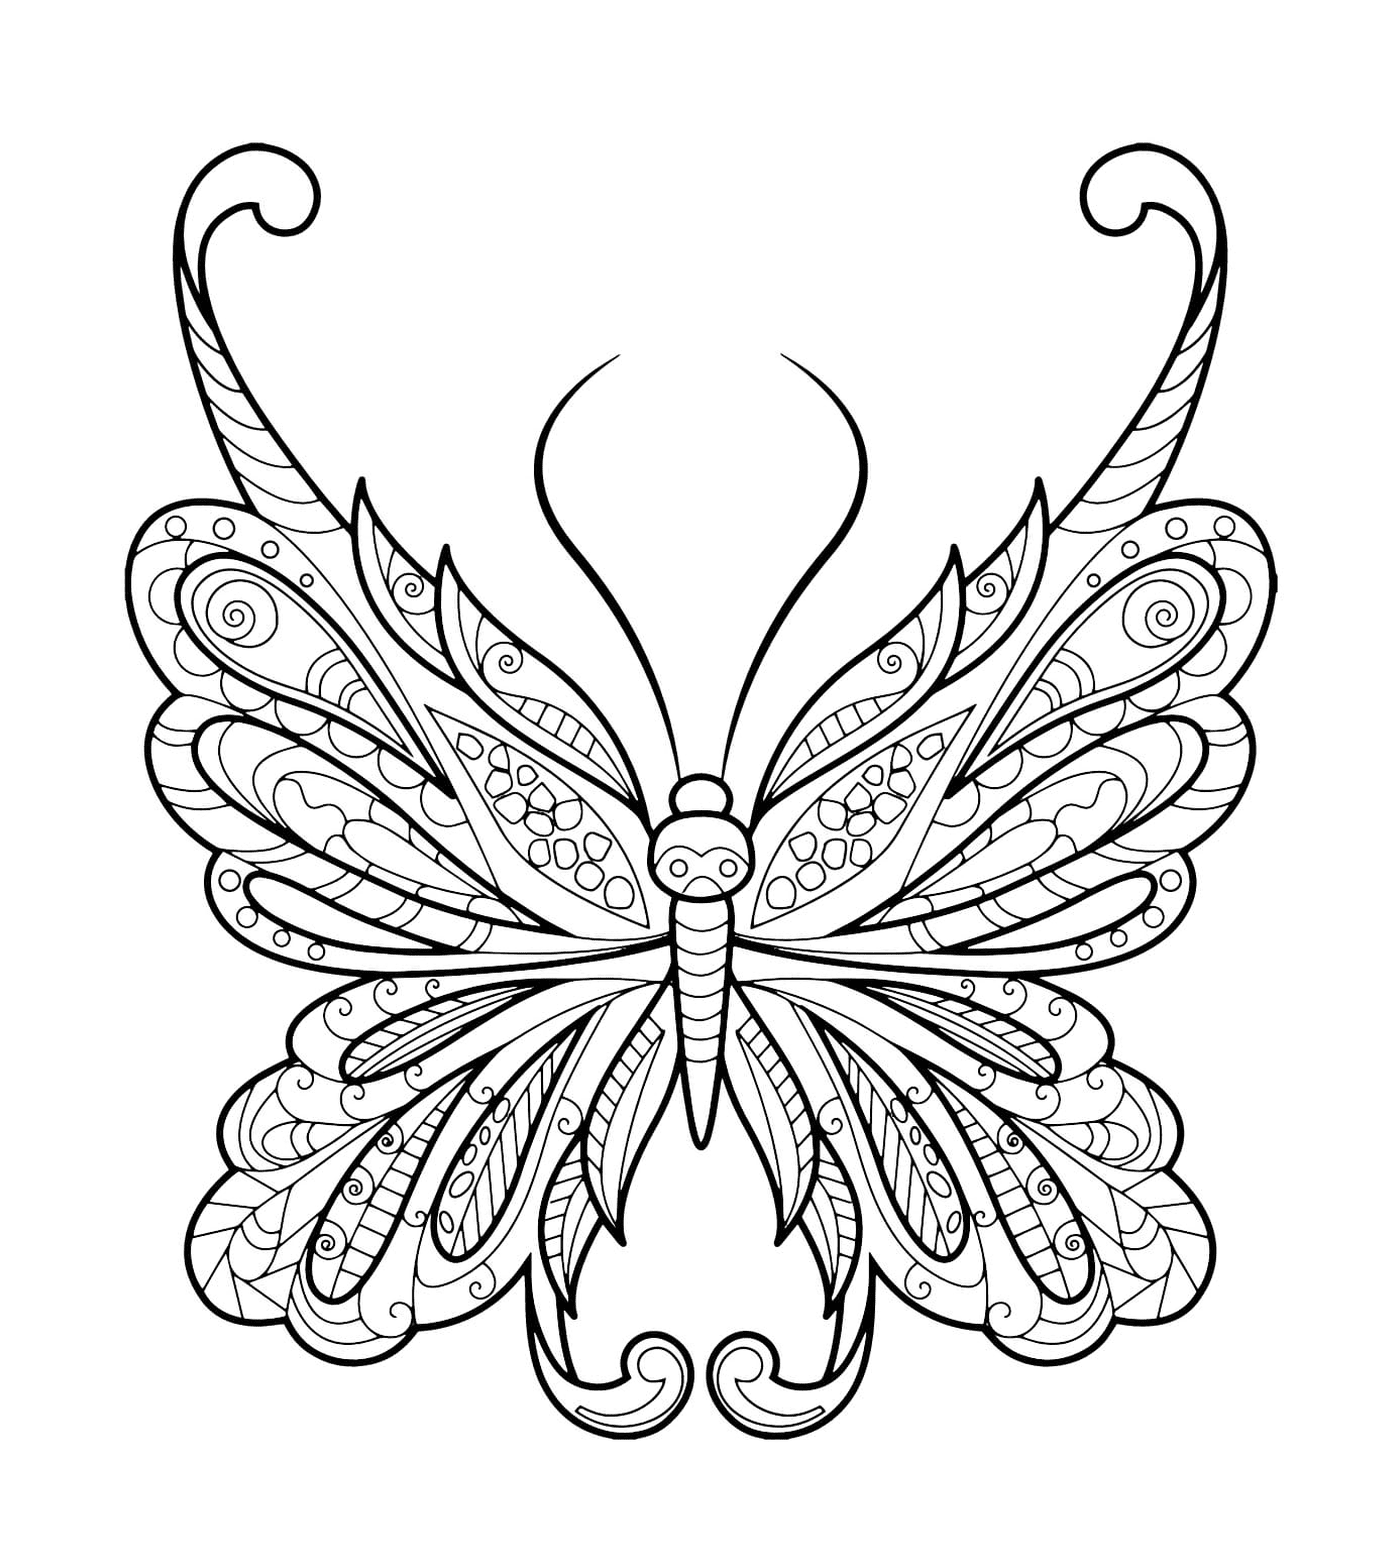  Mariposa zentangle con motivos hermosos 